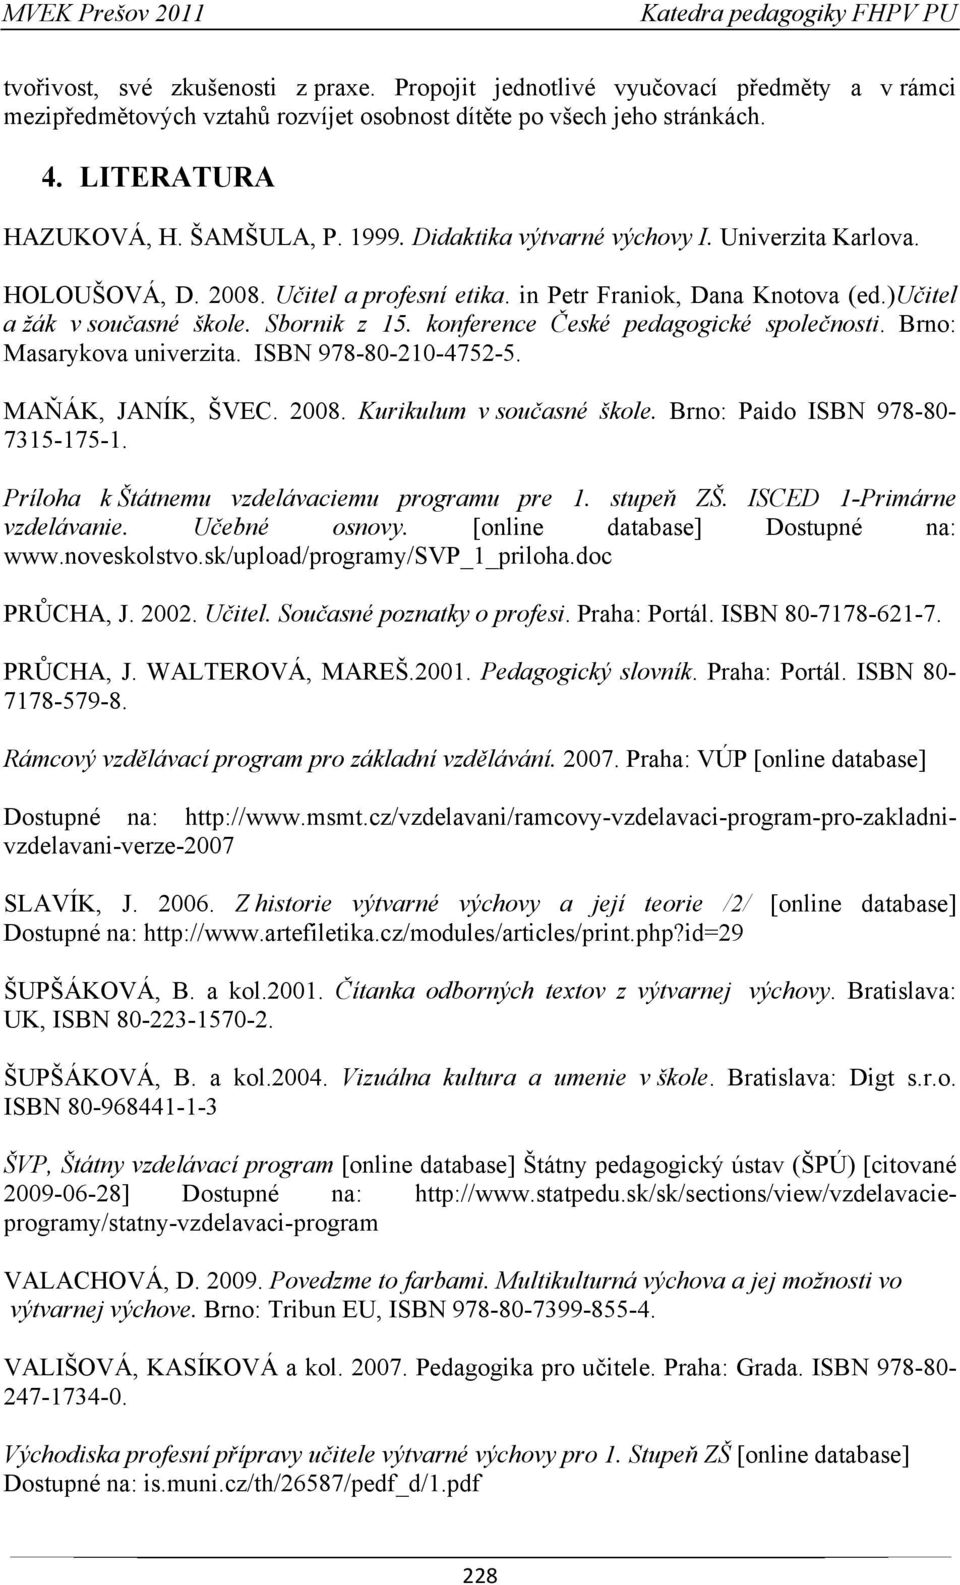 konference České pedagogické společnosti. Brno: Masarykova univerzita. ISBN 978-80-210-4752-5. MAŇÁK, JANÍK, ŠVEC. 2008. Kurikulum v současné škole. Brno: Paido ISBN 978-80- 7315-175-1.